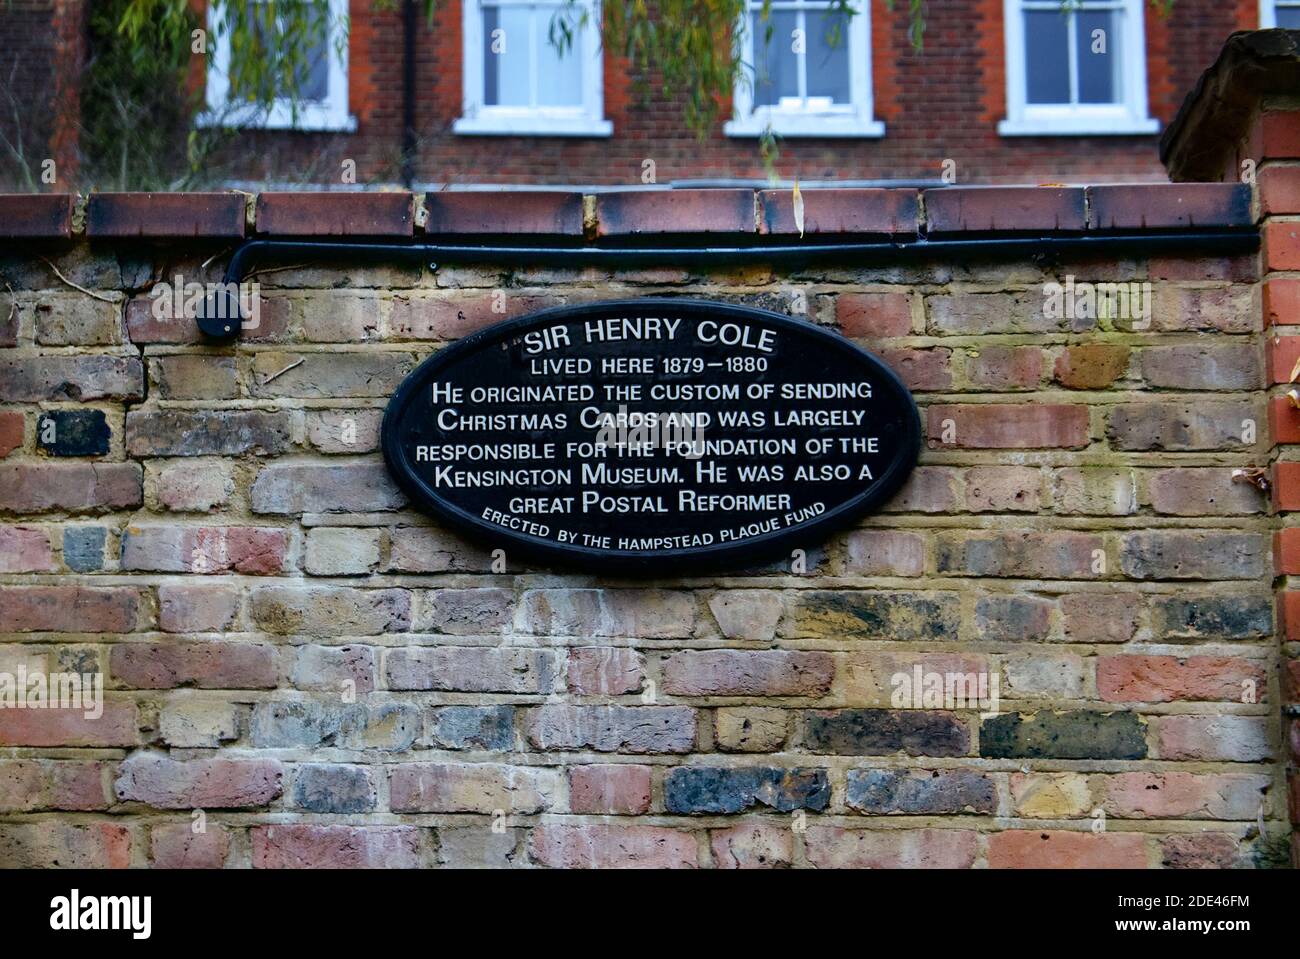 Sir Henry Cole, inventor de las tarjetas de Navidad y el reformador de correos, placa de Hampstead Plaque Fund dedicada donde solía vivir en Hampstead Village. Foto de stock